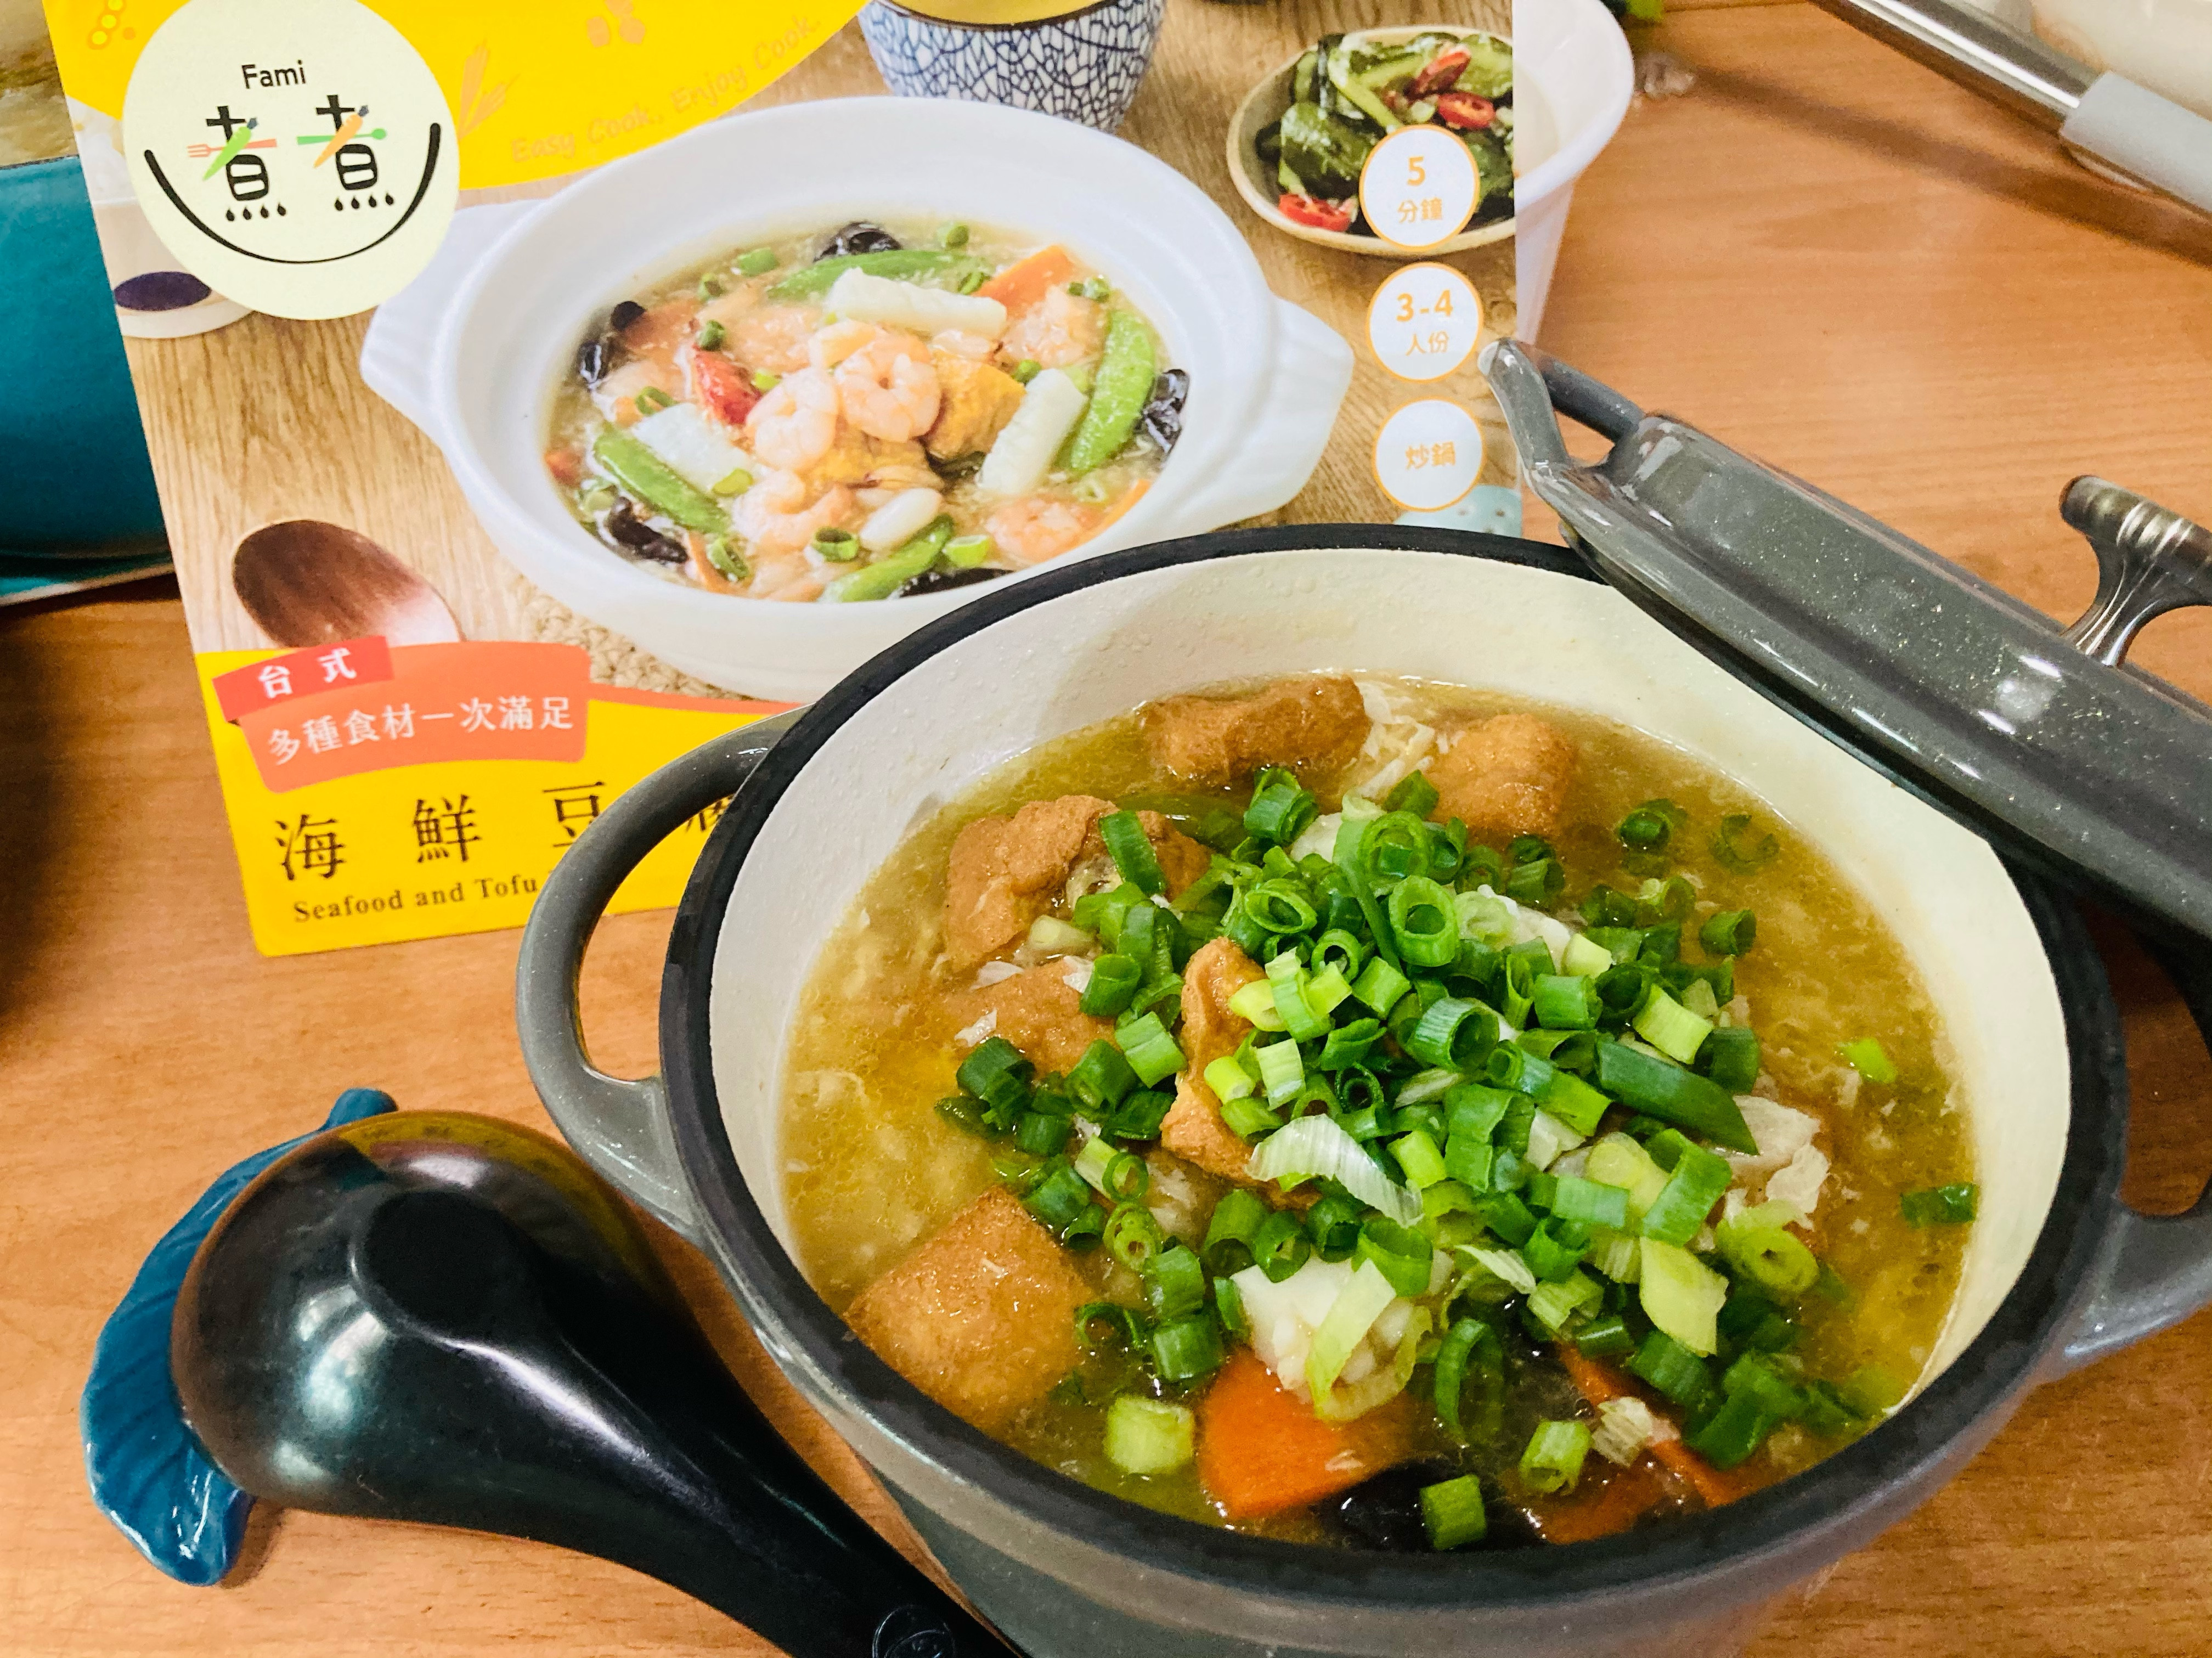 海鮮豆腐煲/Fami煮煮7-8/V鍋